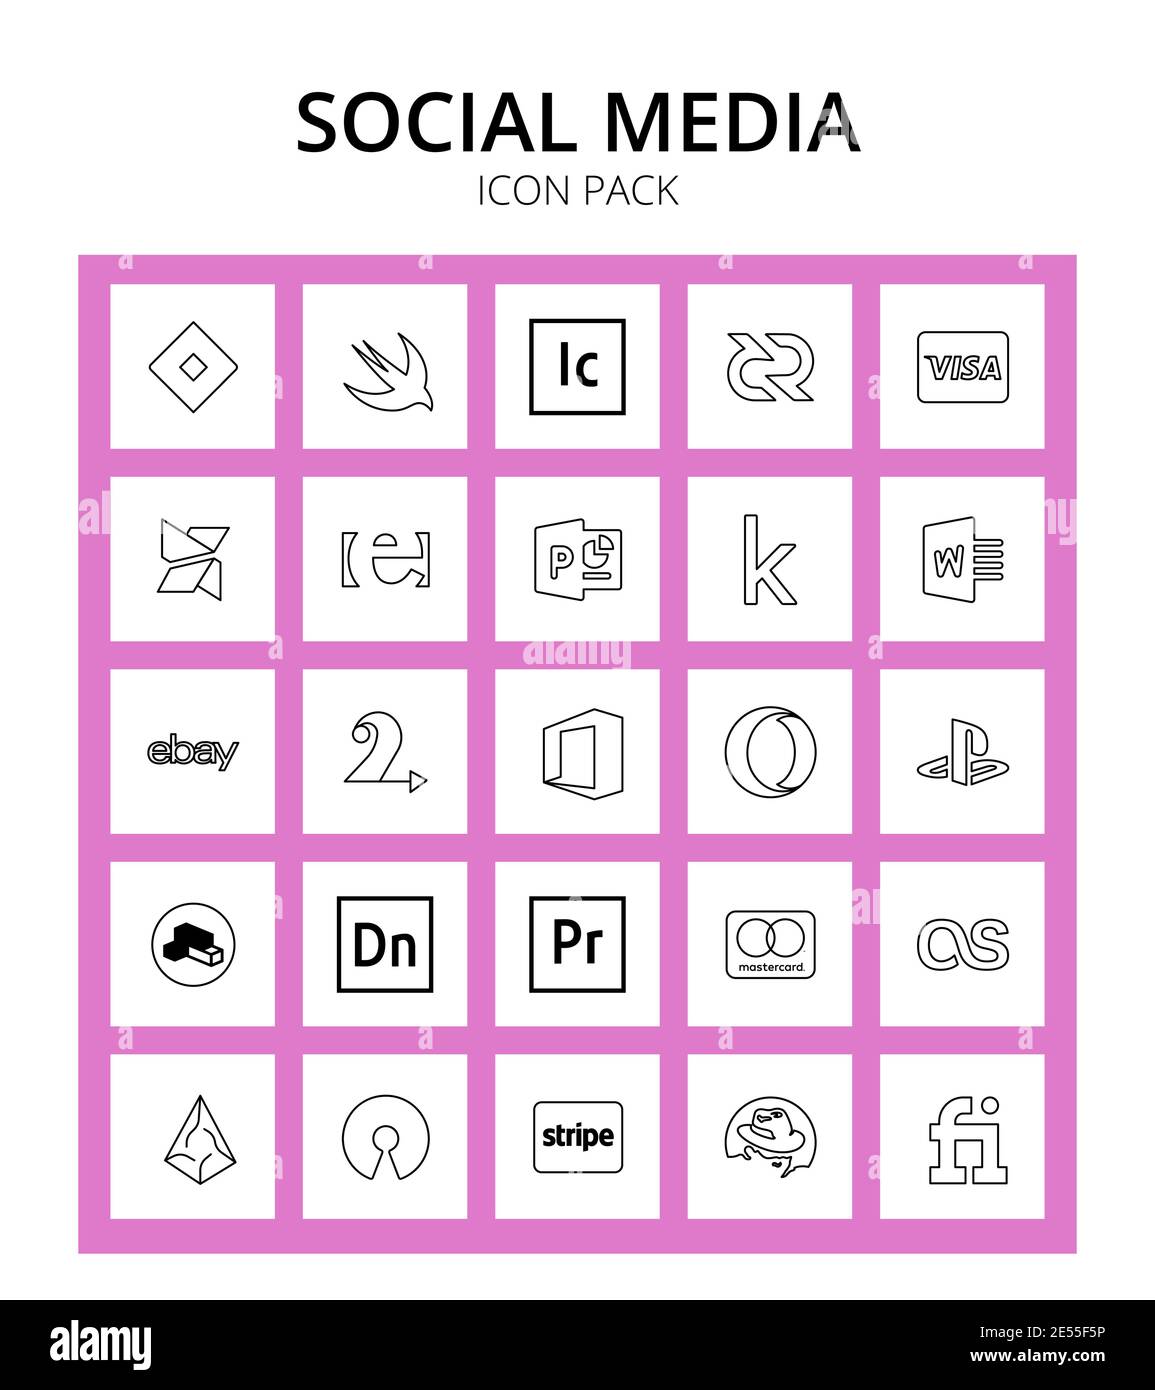 25 signes et symboles sociaux créatif, opéra, erlang, bureau, ebay modifiable Vector Design éléments Illustration de Vecteur